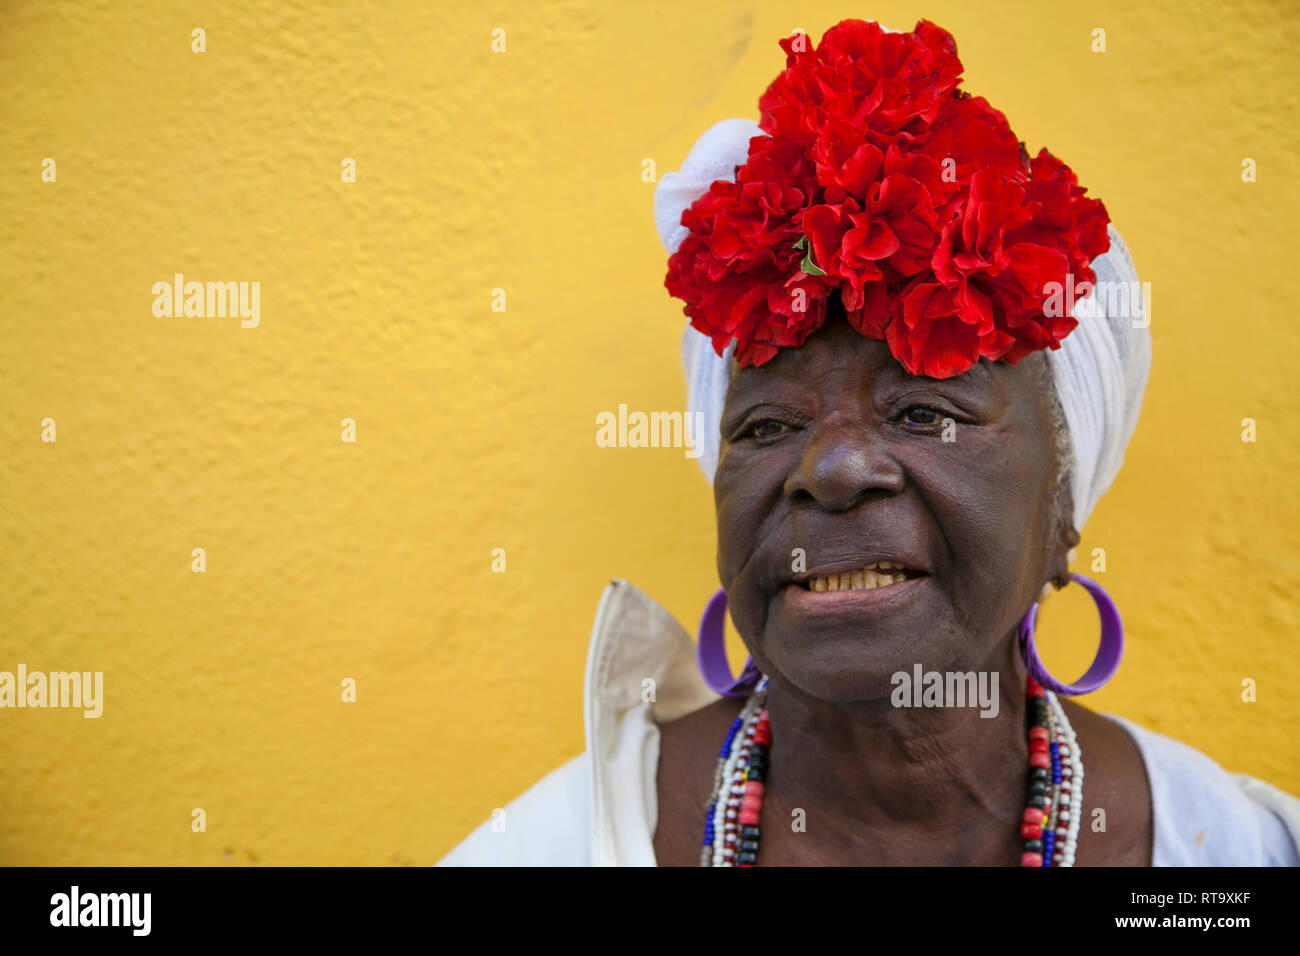 L'Avana, Cuba - 24 Gennaio 2013: Ritratti del popolo cubano in abiti tradizionali. Un anziano afro-cubano donna con un fiorito velo. Foto Stock